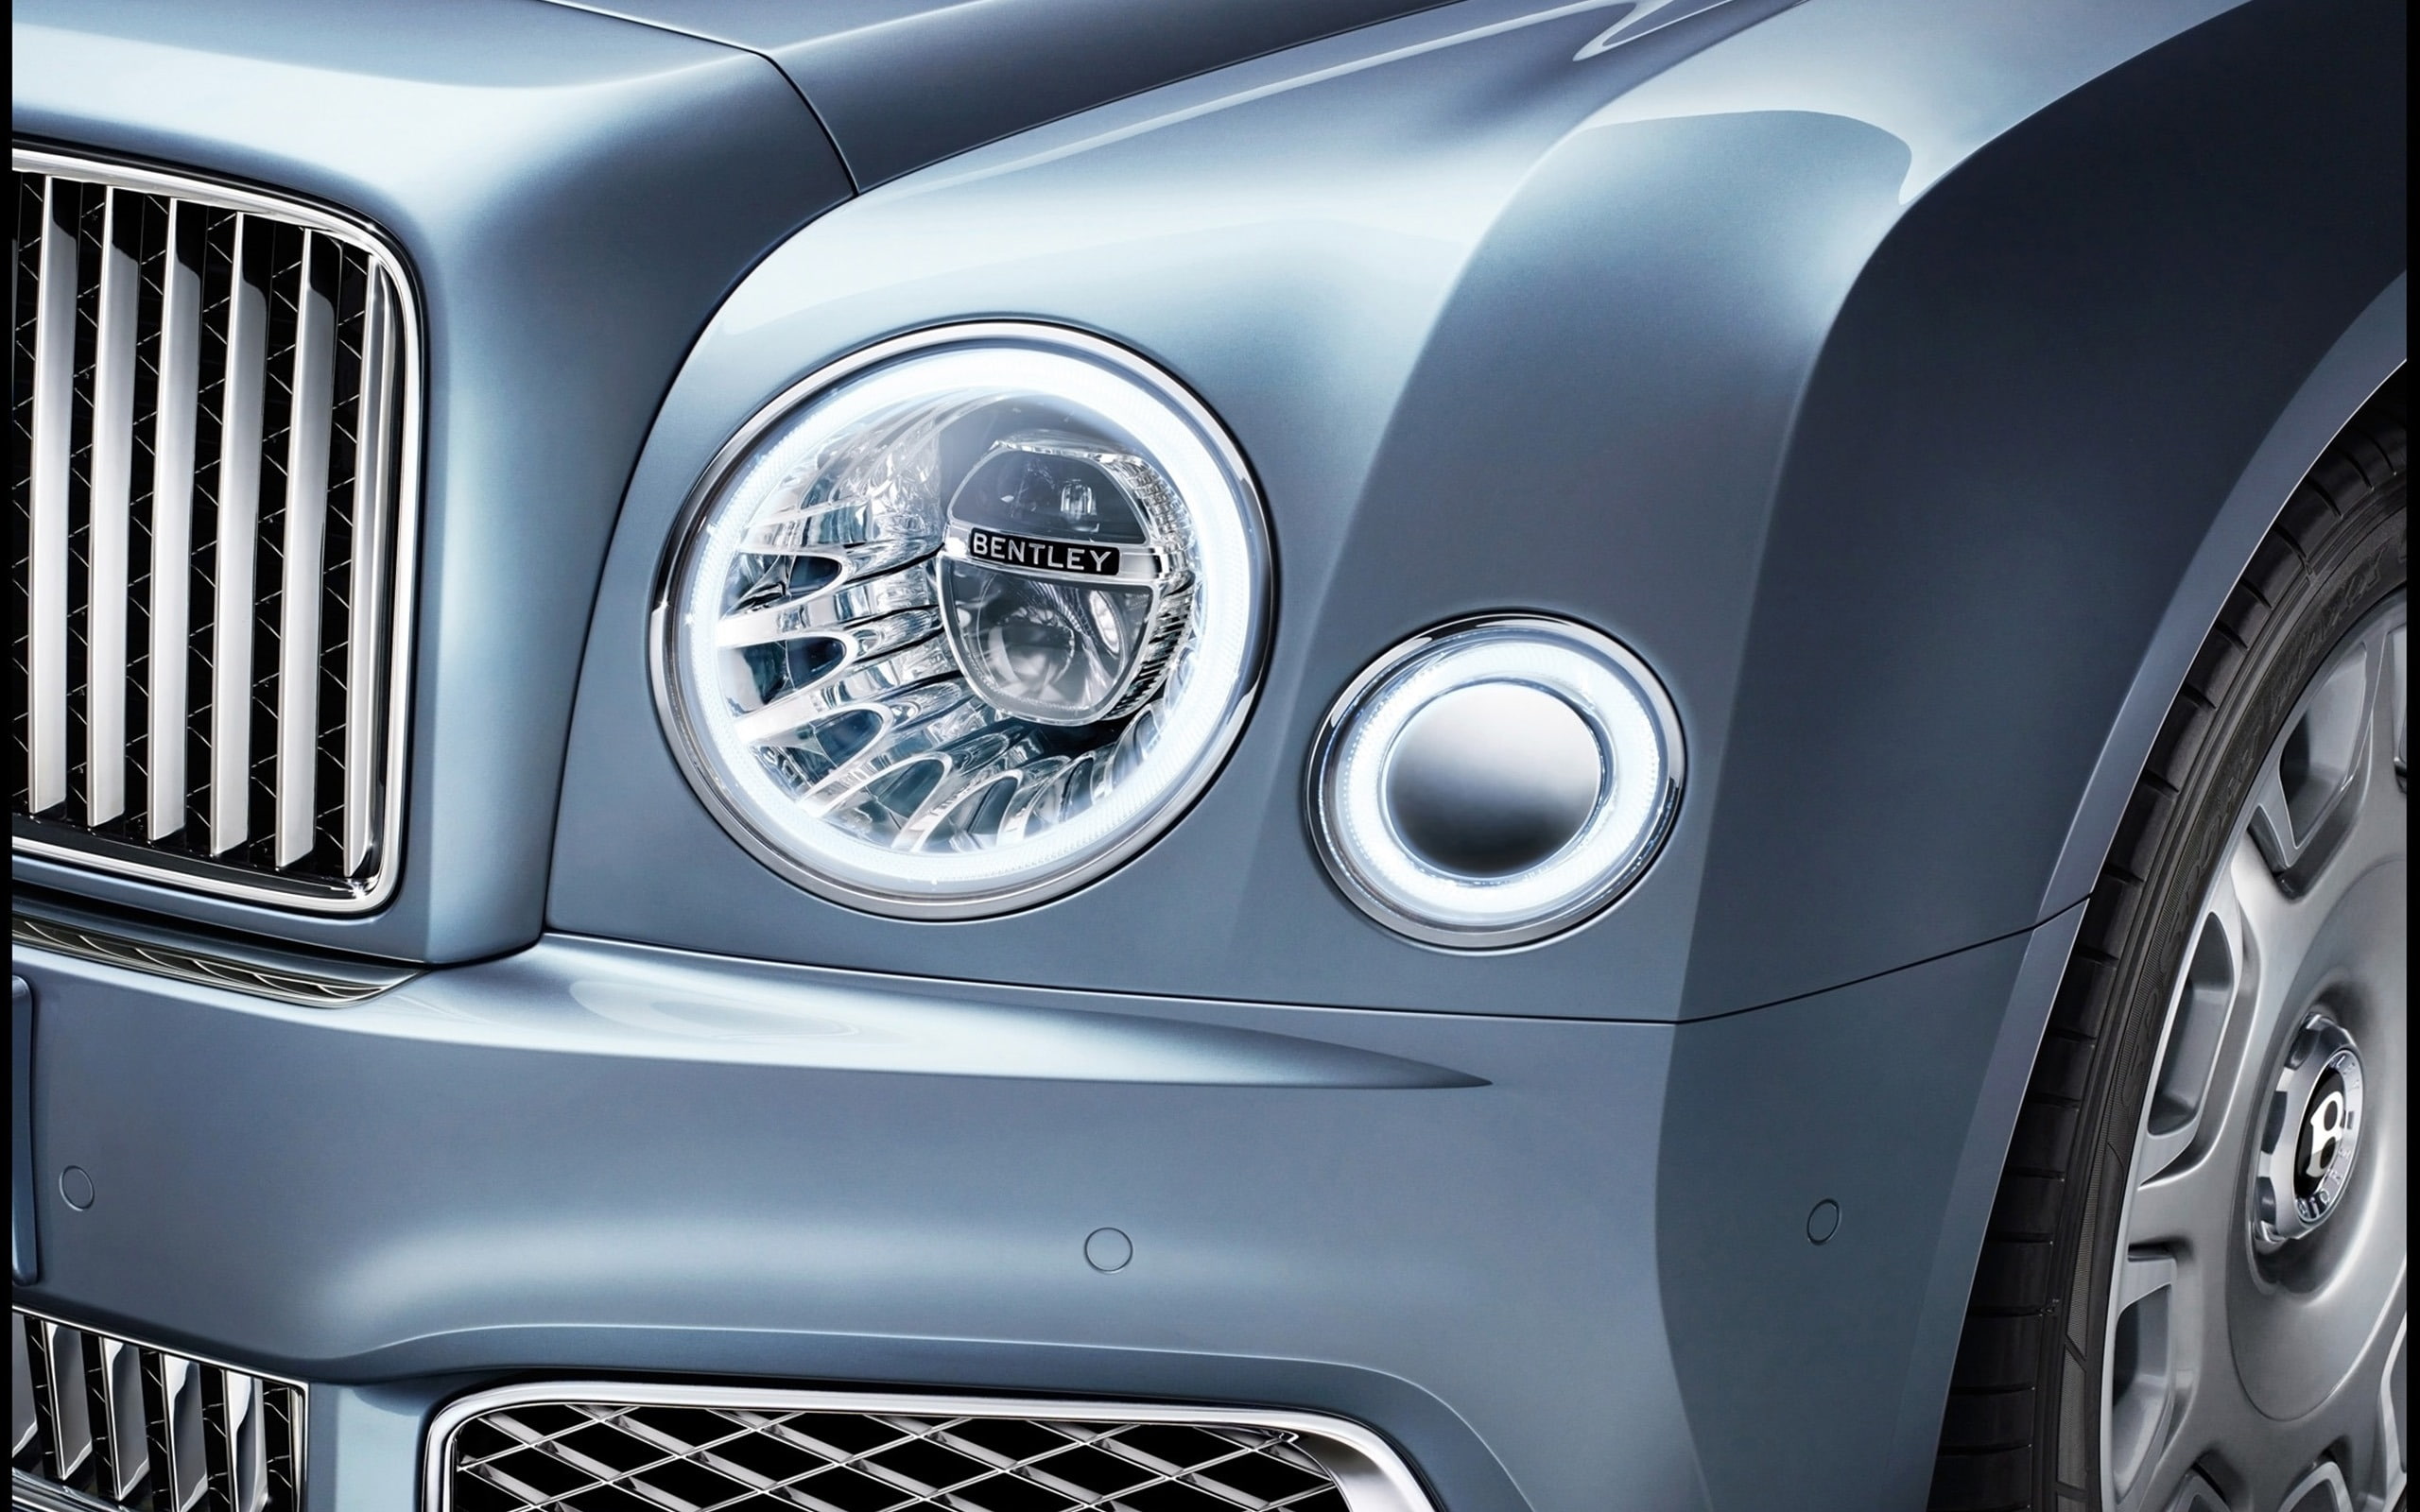 2016 Bentley Mulsanne Luxury Car HD Wallpaper 02, mode of transportation